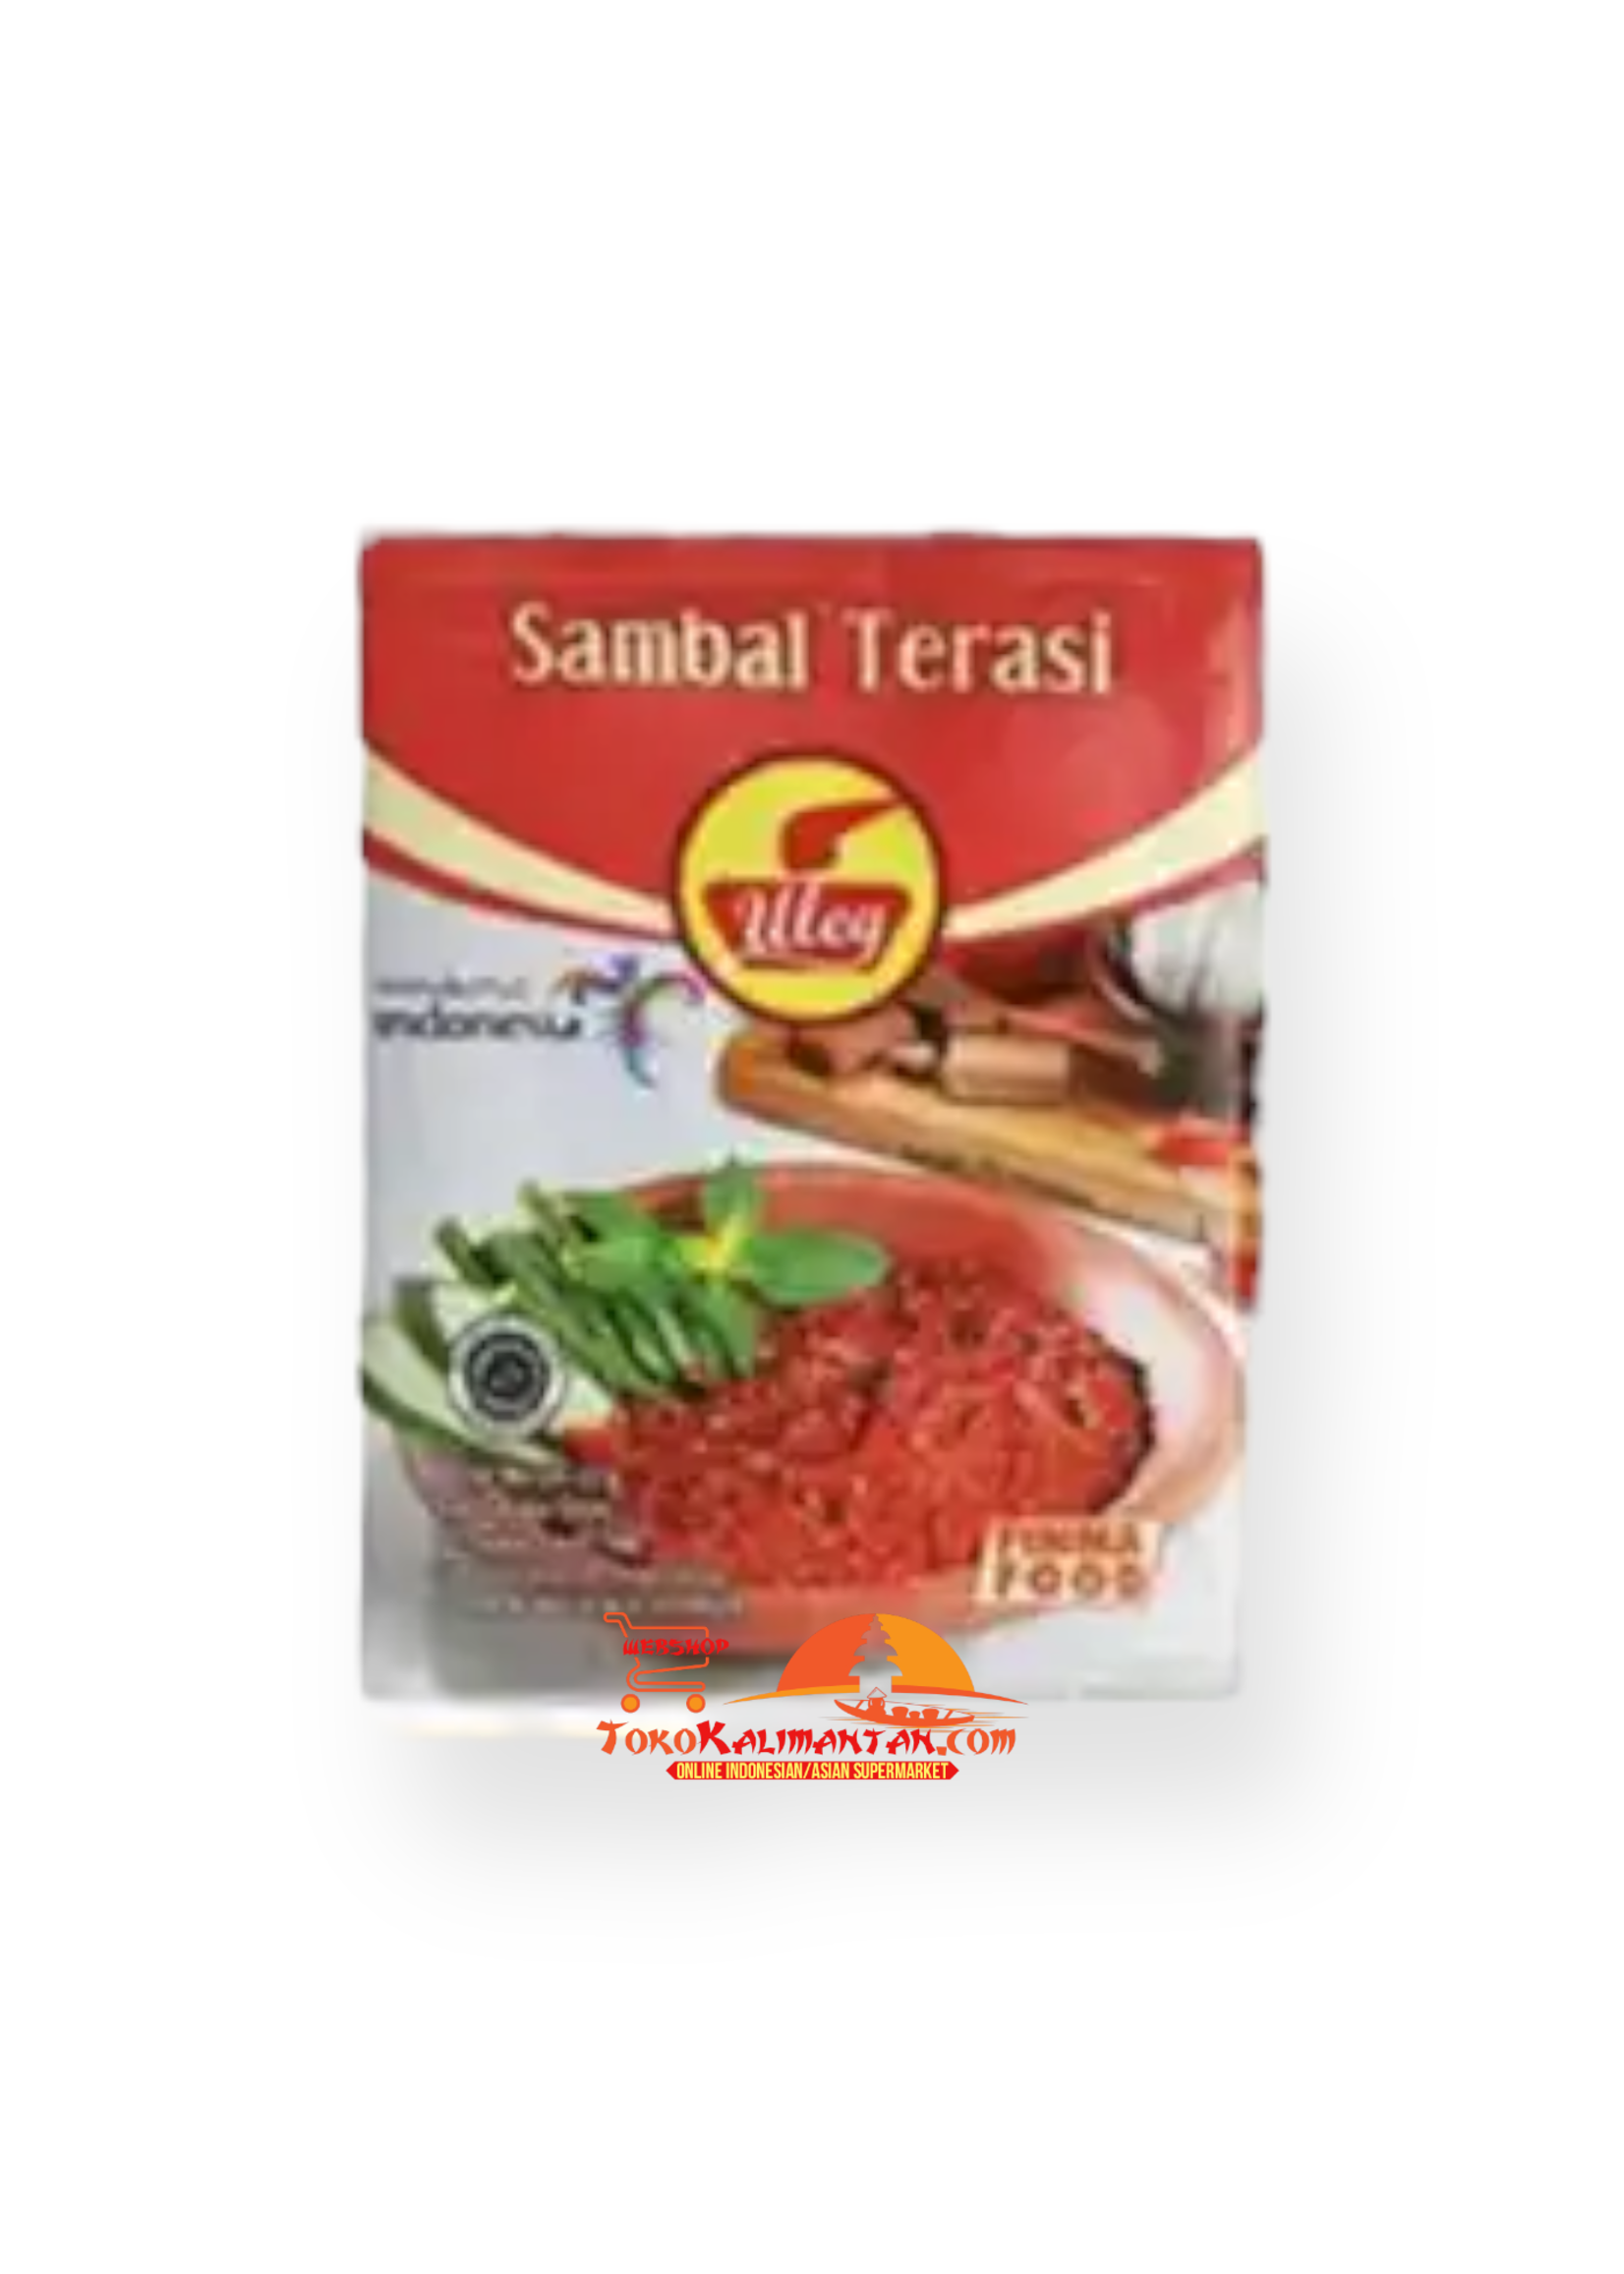 Sambal Uleg Sambal Uleg - Finna Food (10 sachet) — Sambal Terasi Uleg - Finna Food (10 sachet)